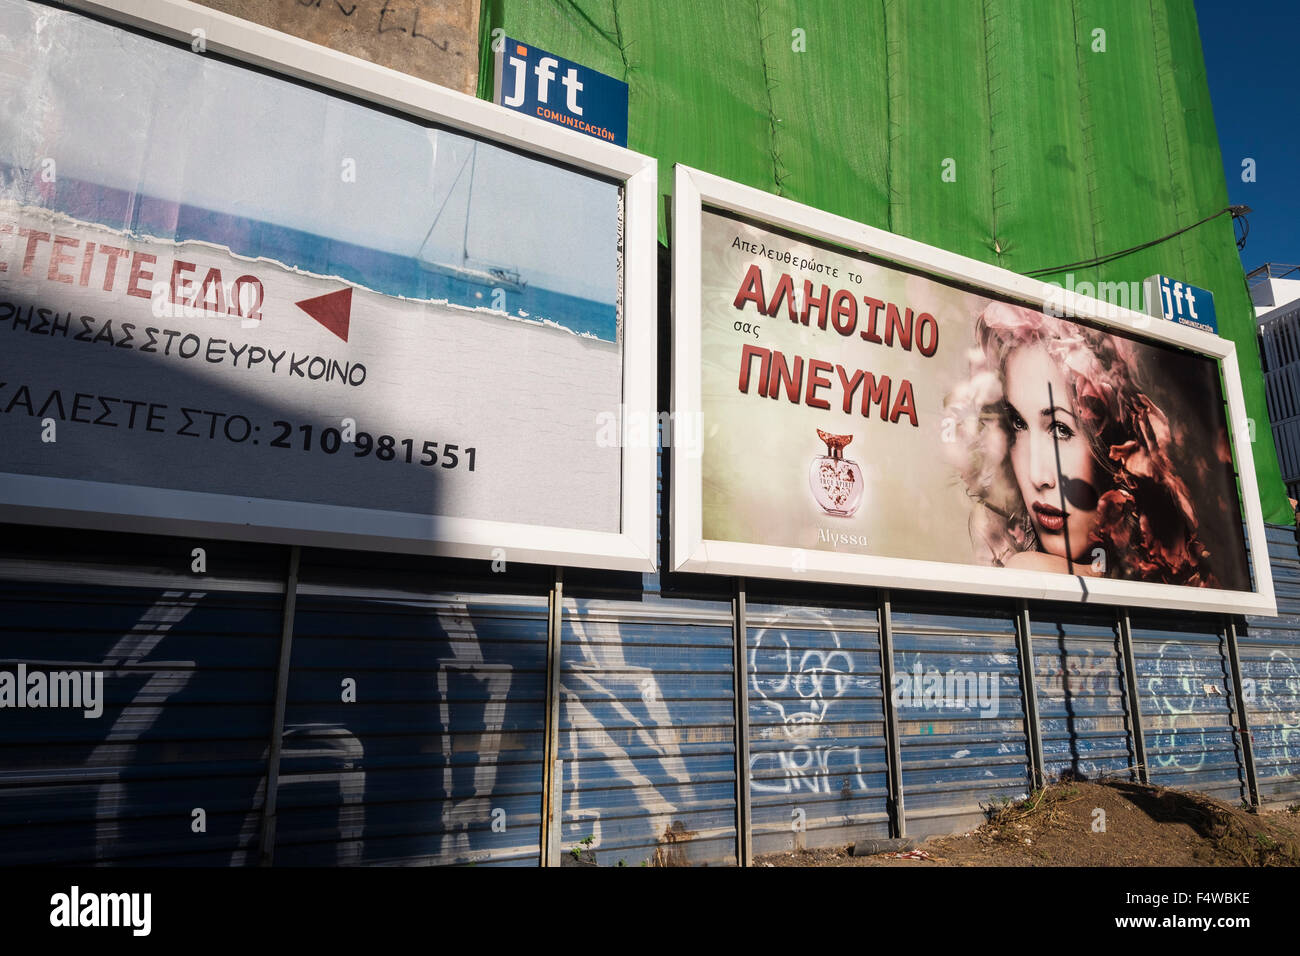 Santa Cruz avec façades Grec, panneaux publicitaires, etc. pour l'utiliser comme un plateau de tournage Le tournage du nouveau film Bourne. Tenerife, Canaries, Spa Banque D'Images